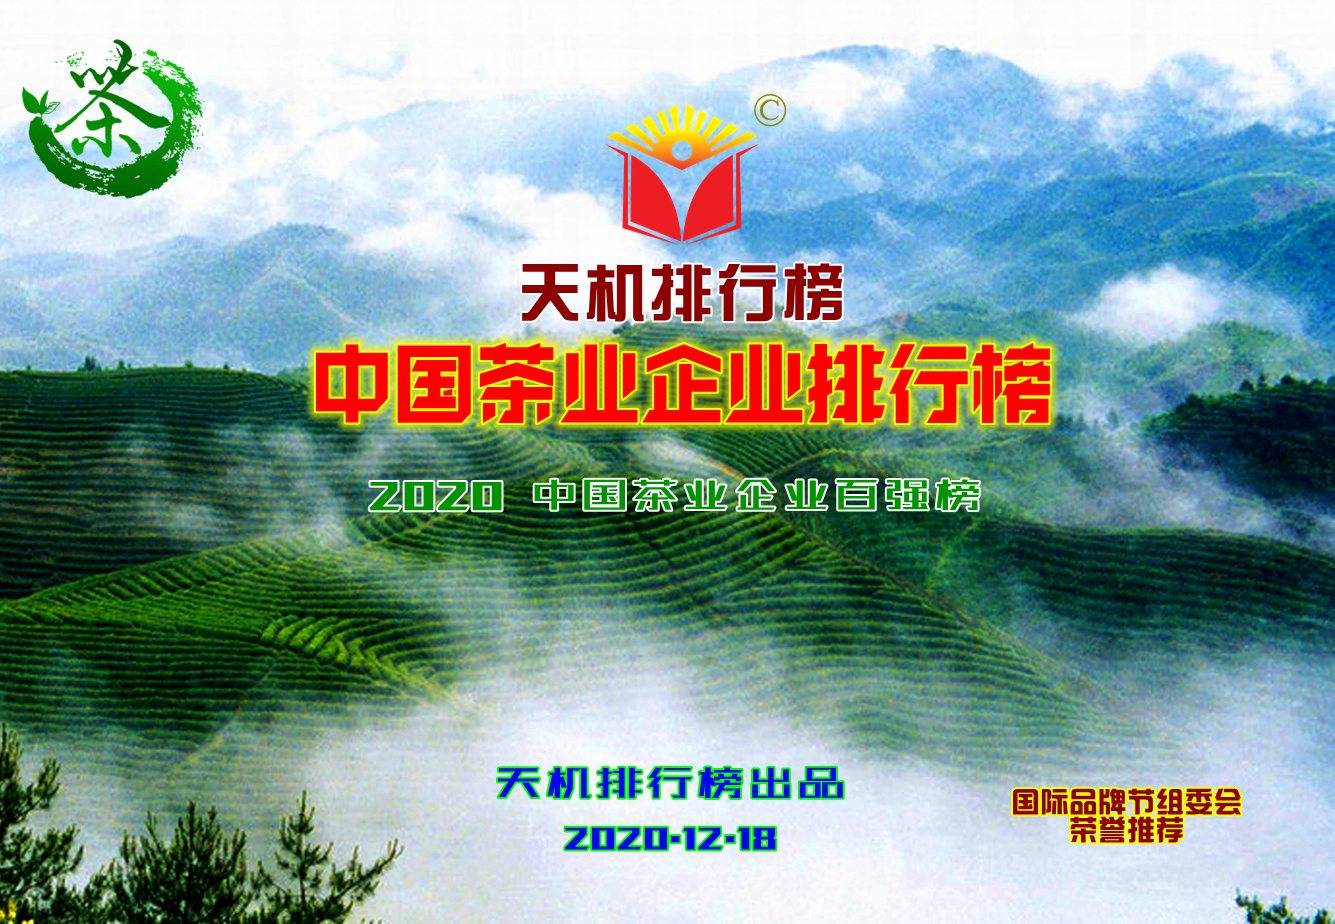 天机排行榜发布中国茶业企业排行榜 